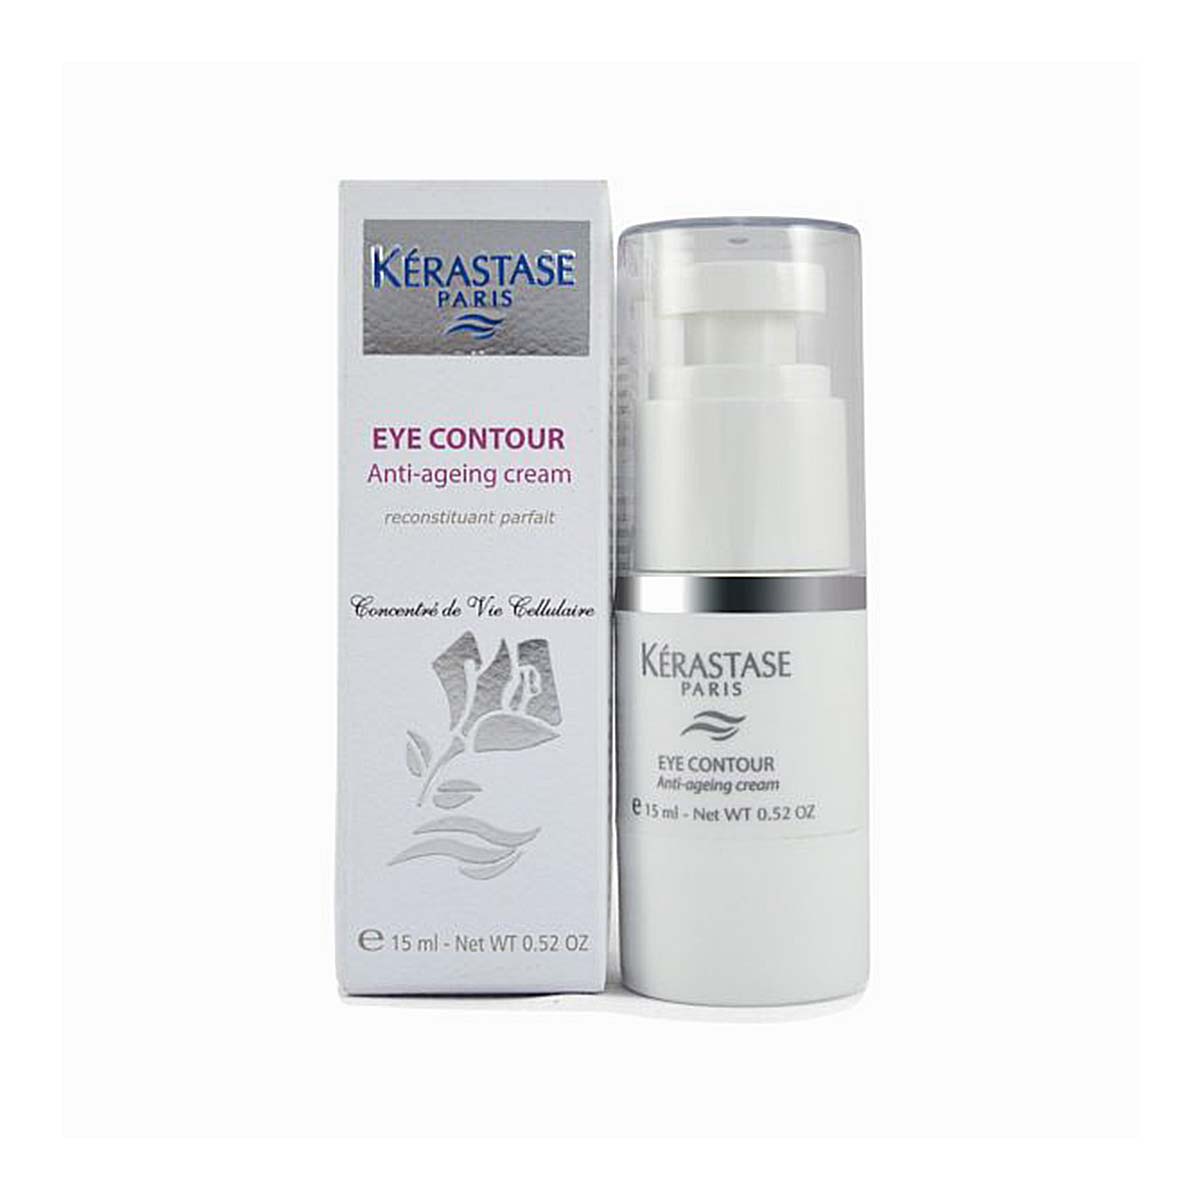 Kerastase Eye Contour Anti-Agening Cream 15ml